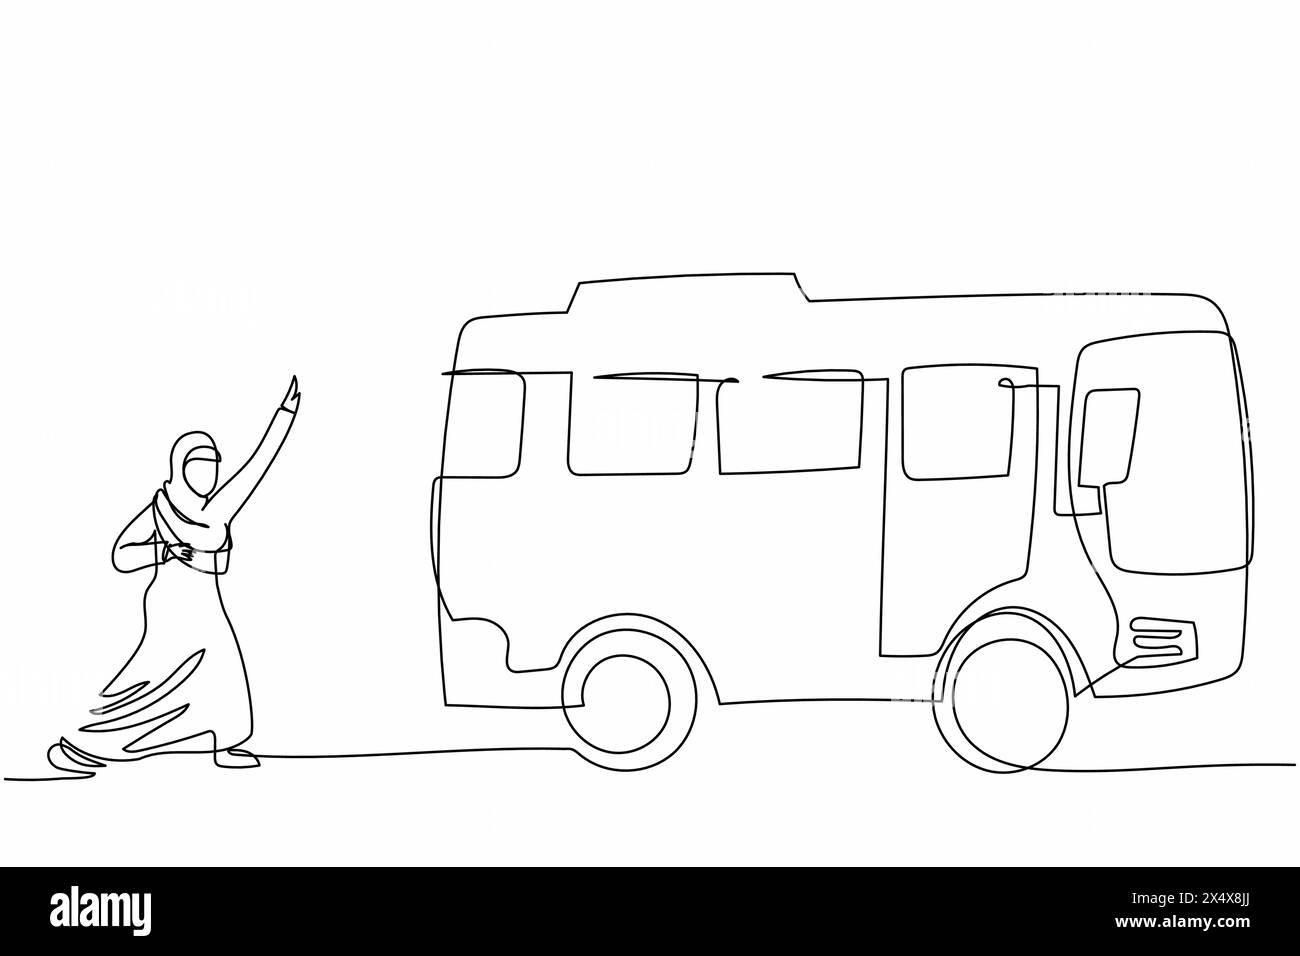 Eine einzige Linie, die arabische Geschäftsfrau zeichnet, die den Bus verfolgt. Nachzügler, weibliche Arbeiterin, fährt mit dem REACH-Bus ins Büro. Stadtleben Menschen in der Großstadt. Stock Vektor